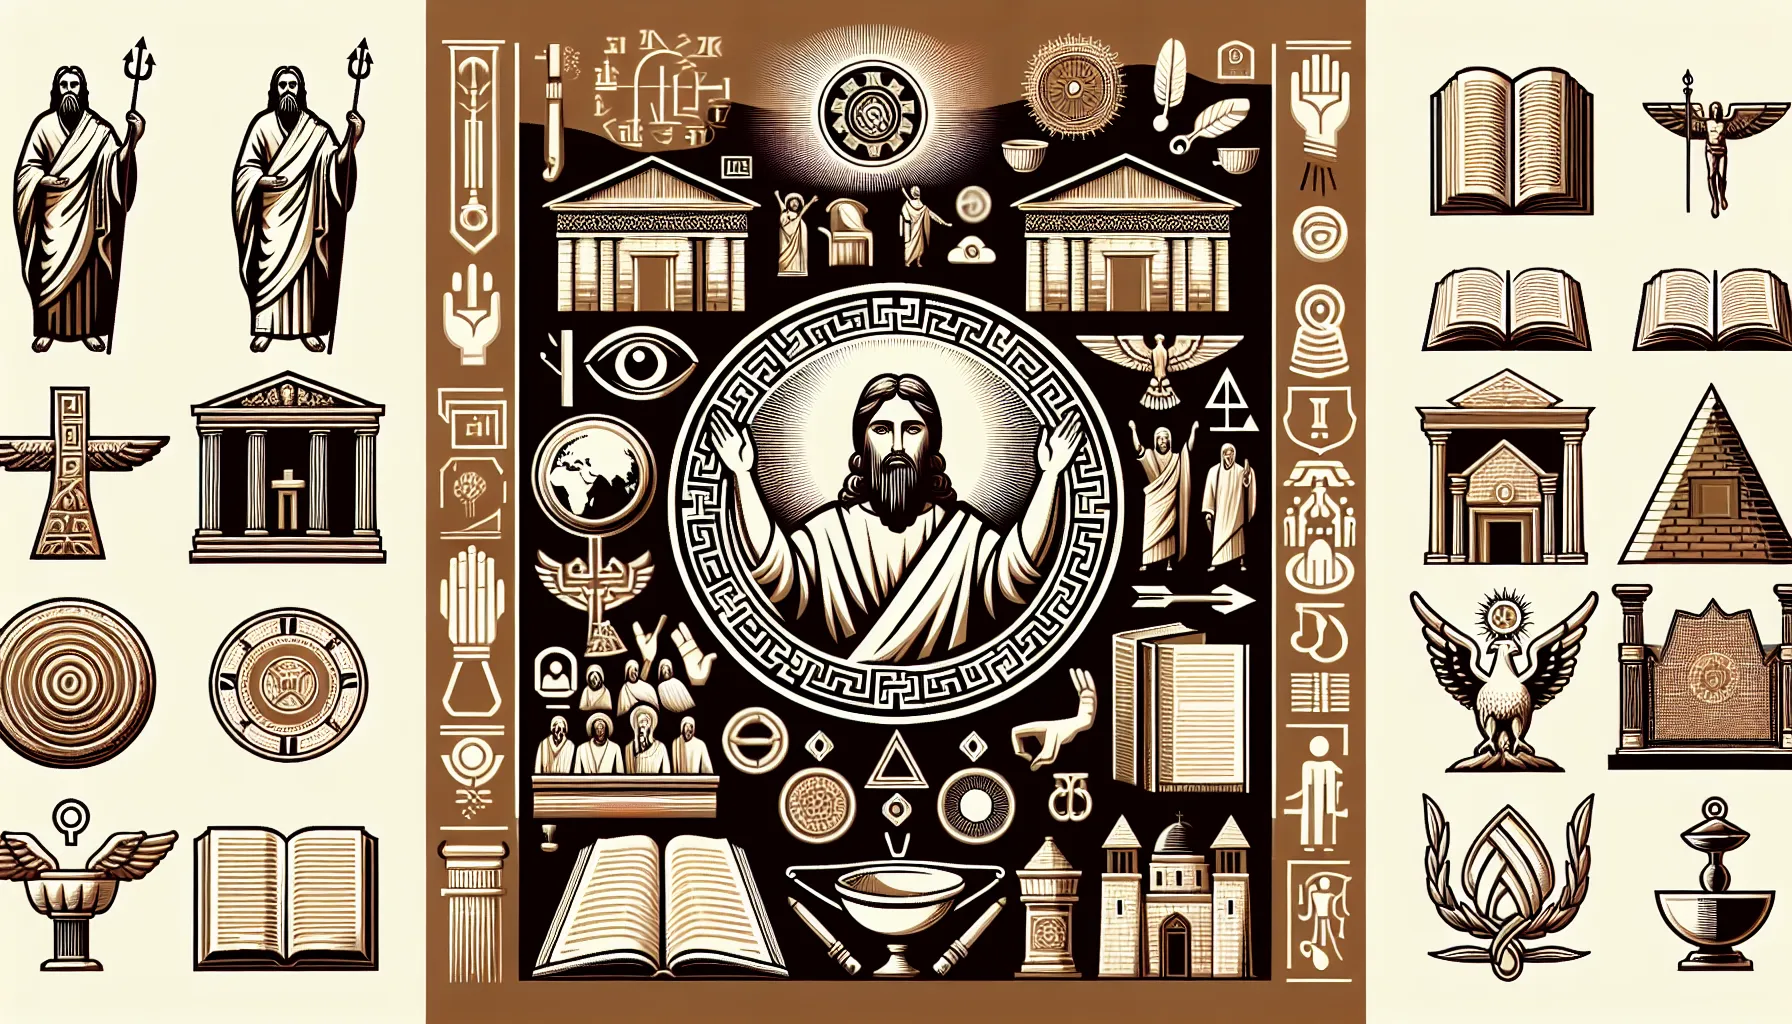 Representación visual de la frase 'Vosotros sois dioses en la Biblia' junto al contexto histórico y religioso detrás de este concepto.